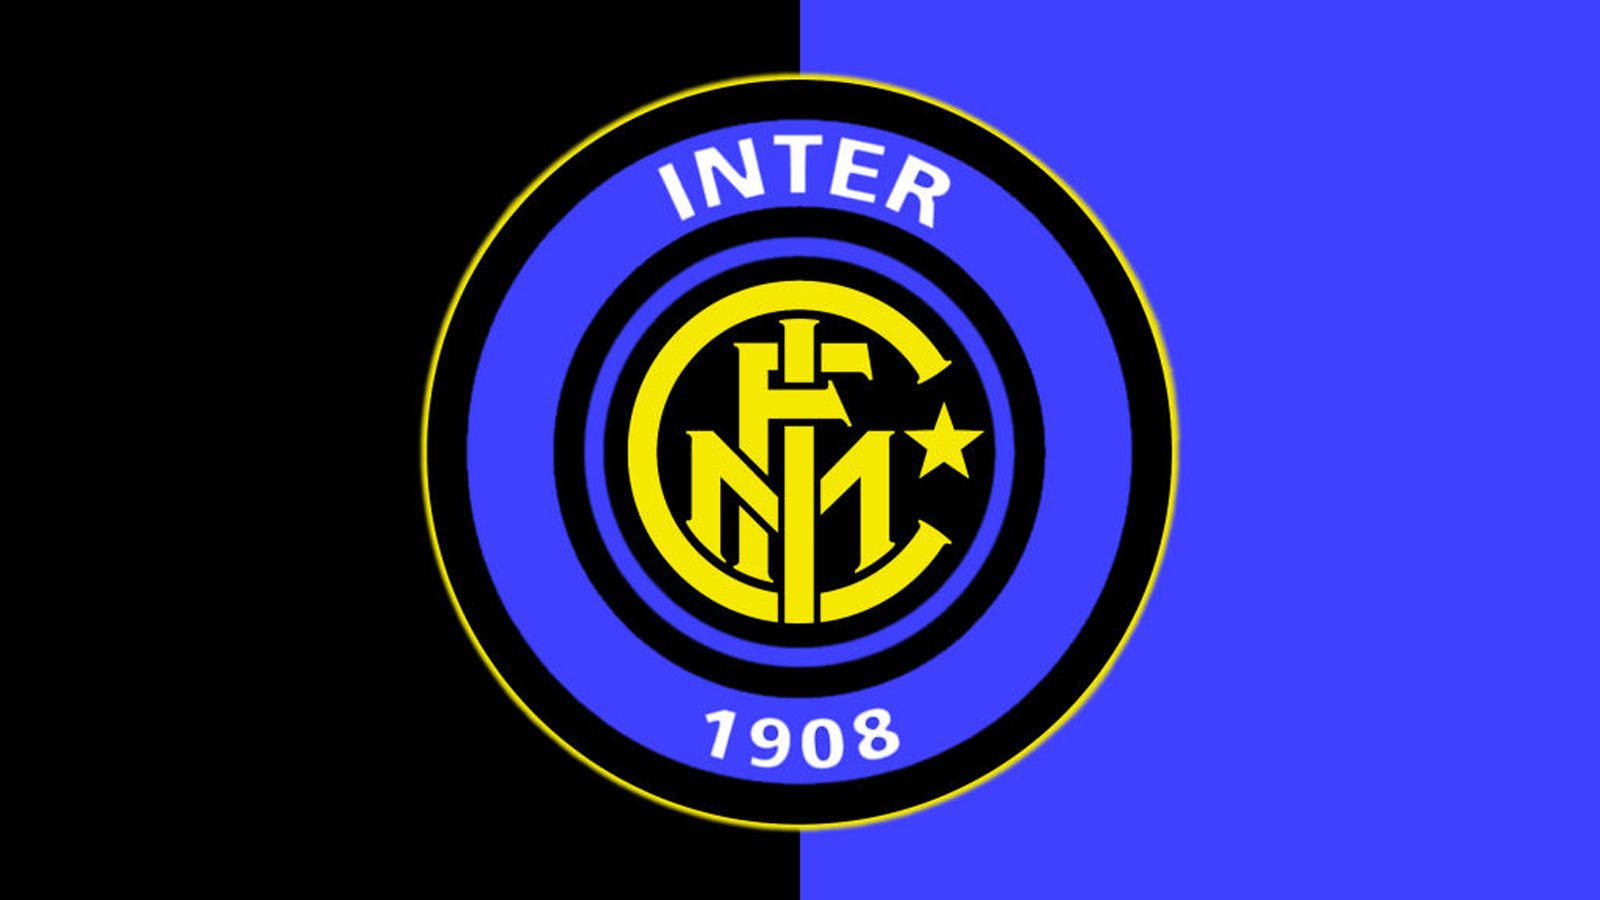 Inter r. Интер футбольный клуб эмблема.